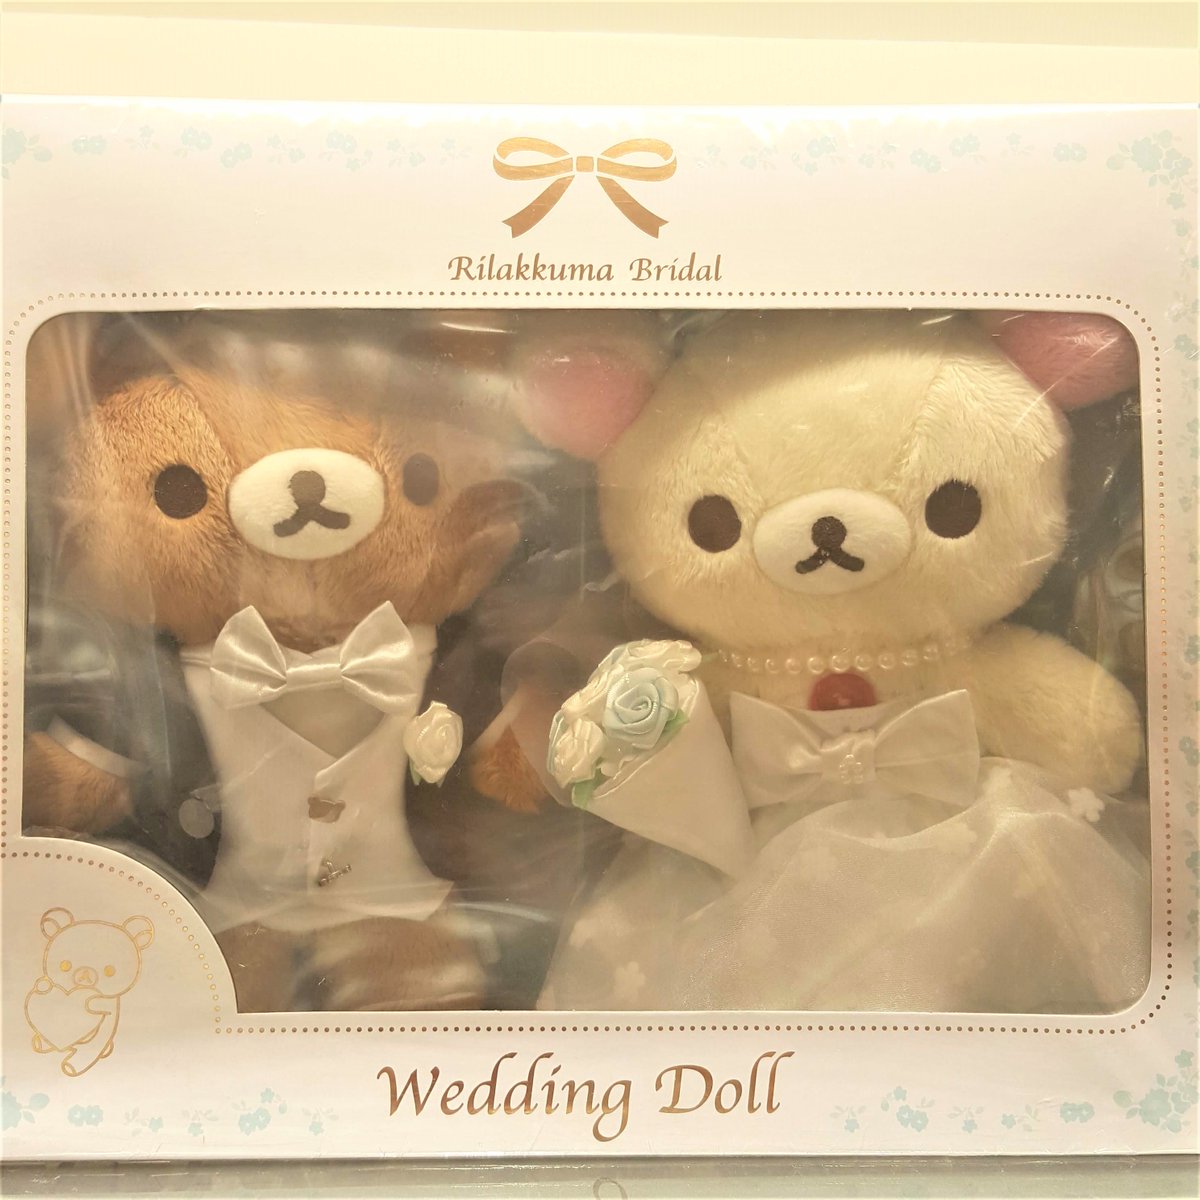 rilakkuma wedding doll